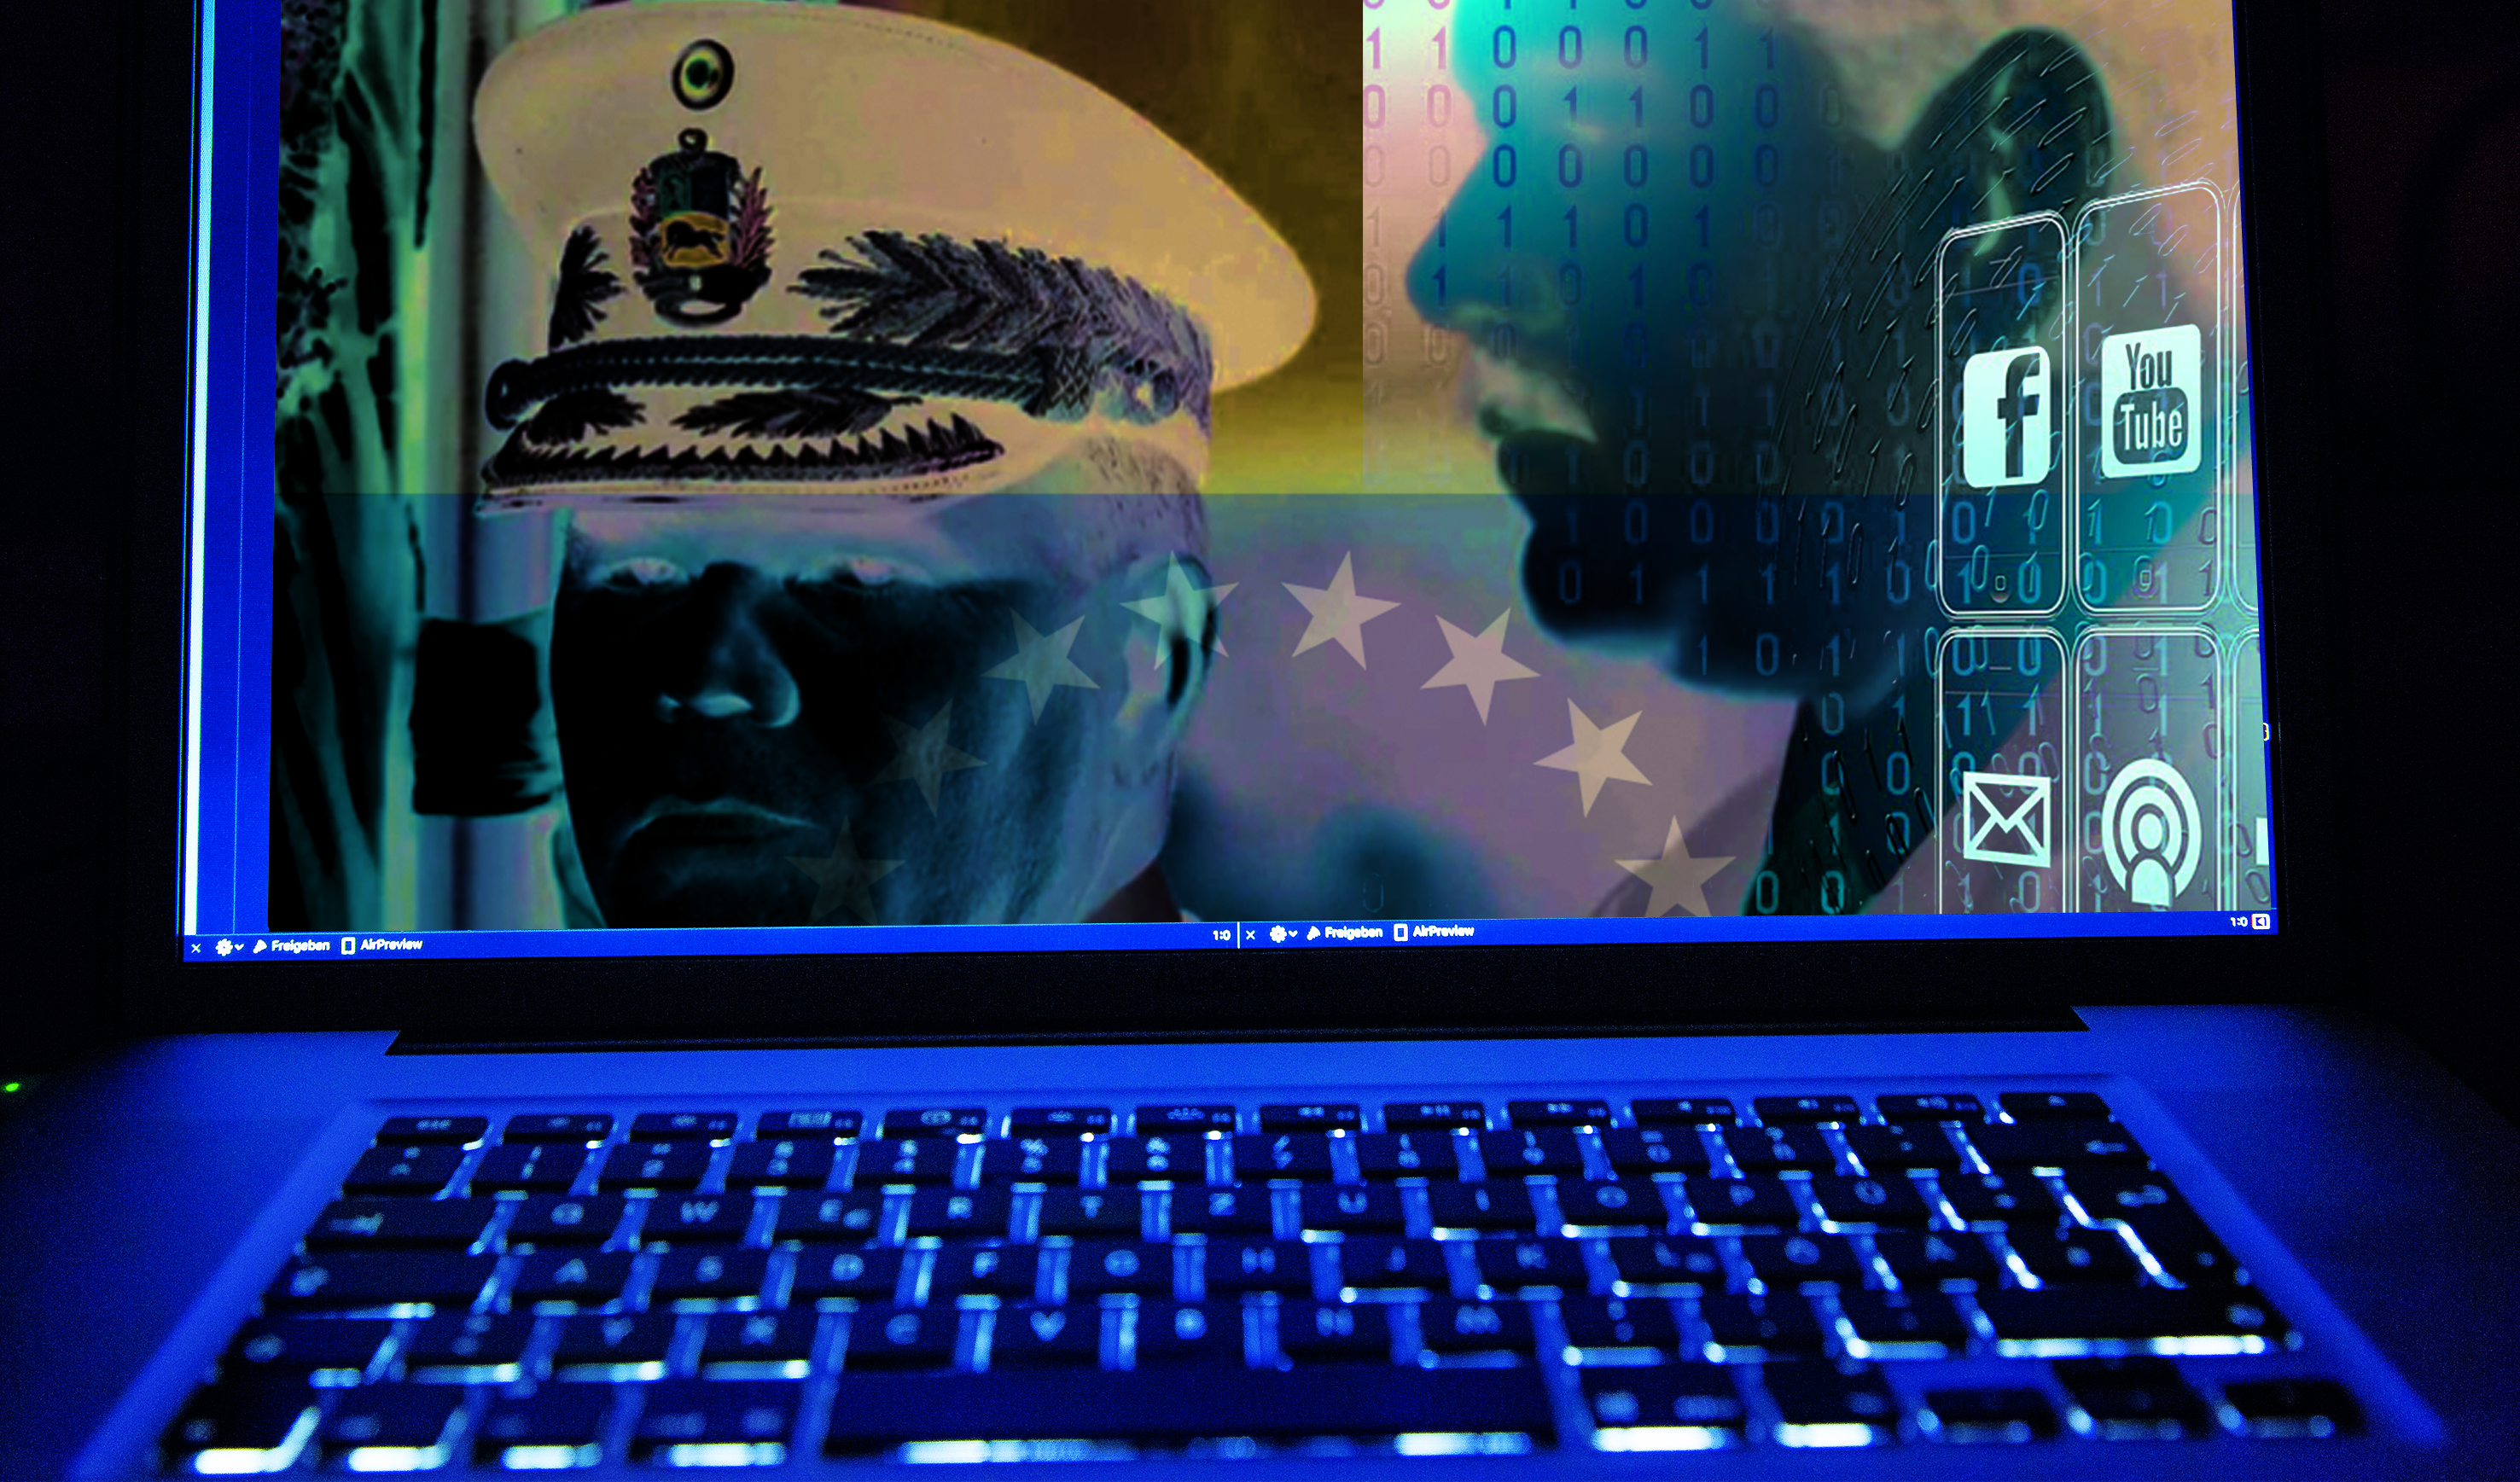 Oficialismo usa redes militares para campanha de Maduro